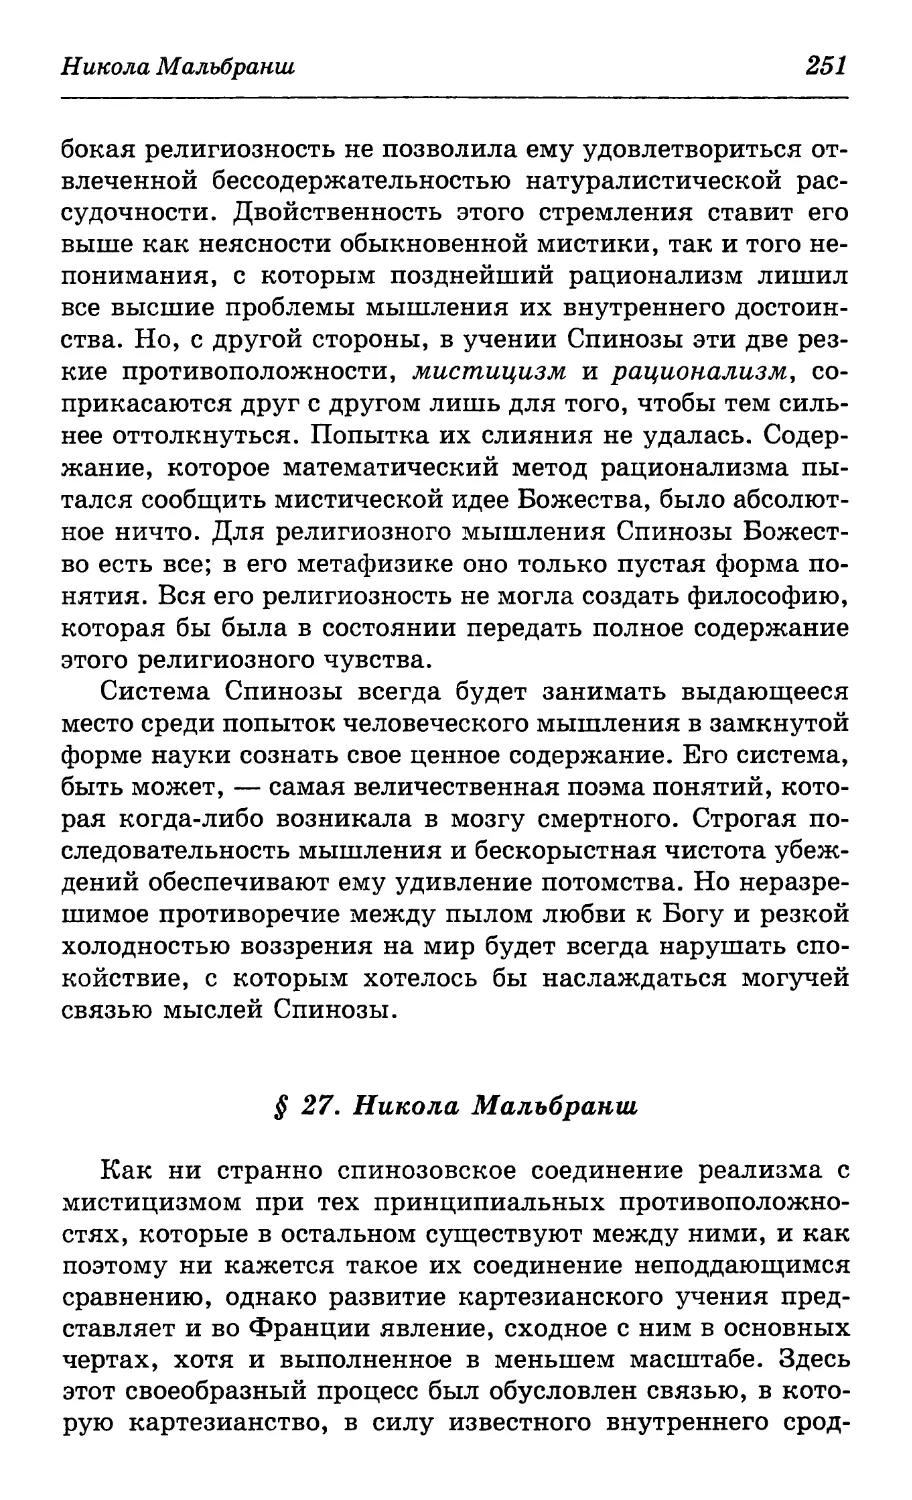 § 27. Никола Мальбранш